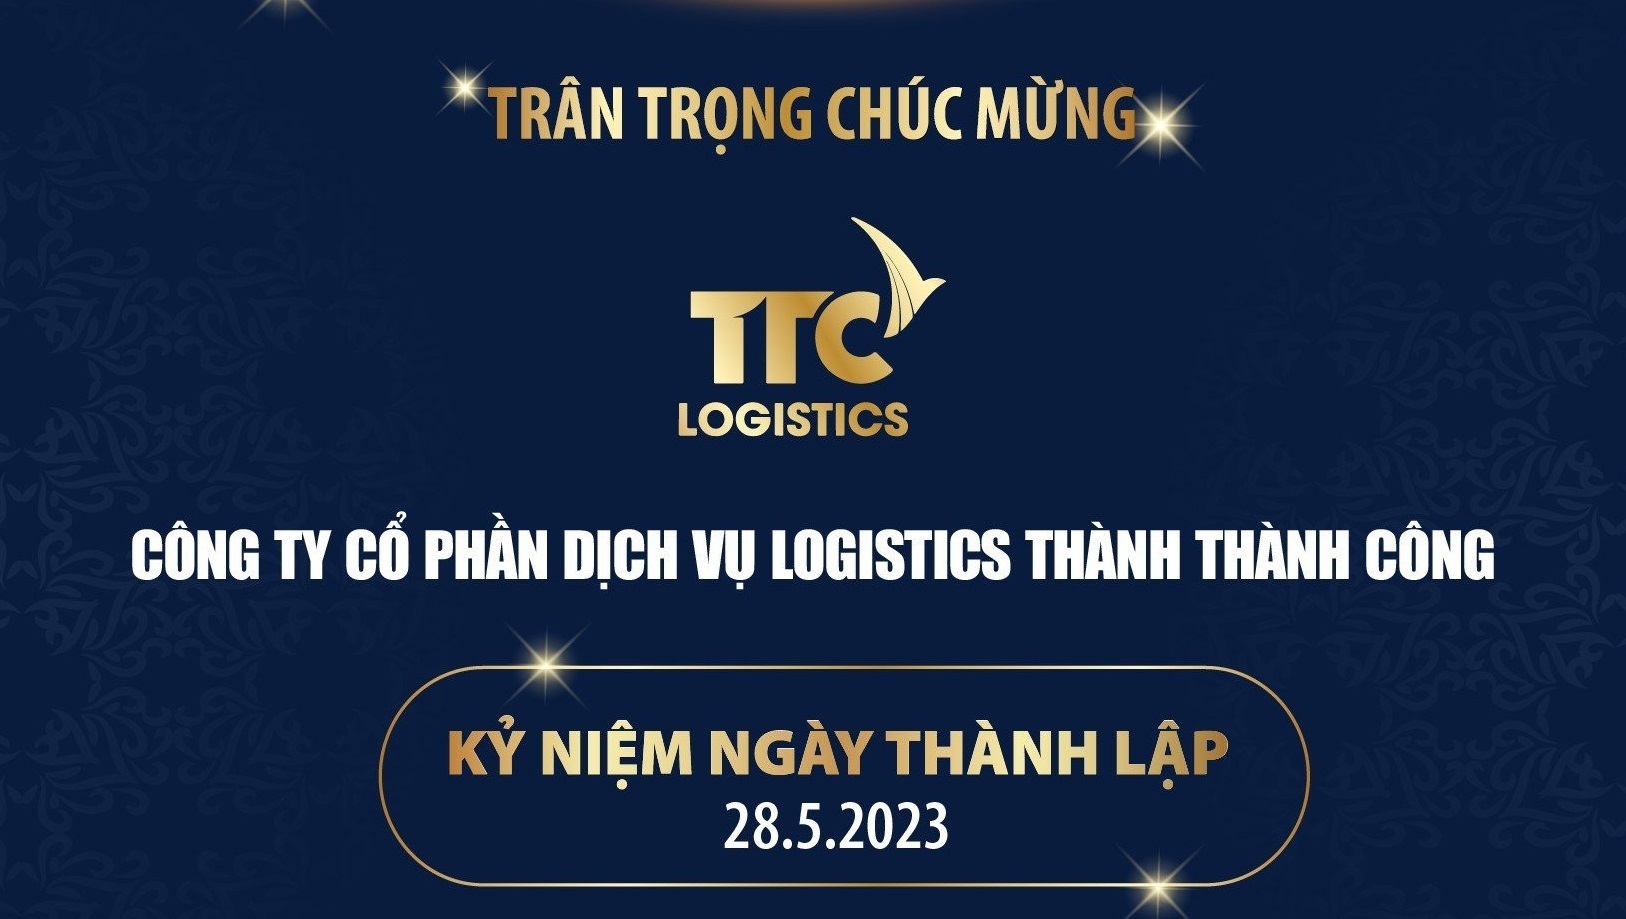 Trân trọng chúc mừng kỷ niệm ngày thành lập Công ty Cổ phần Dịch vụ Logistics Thành Thành Công